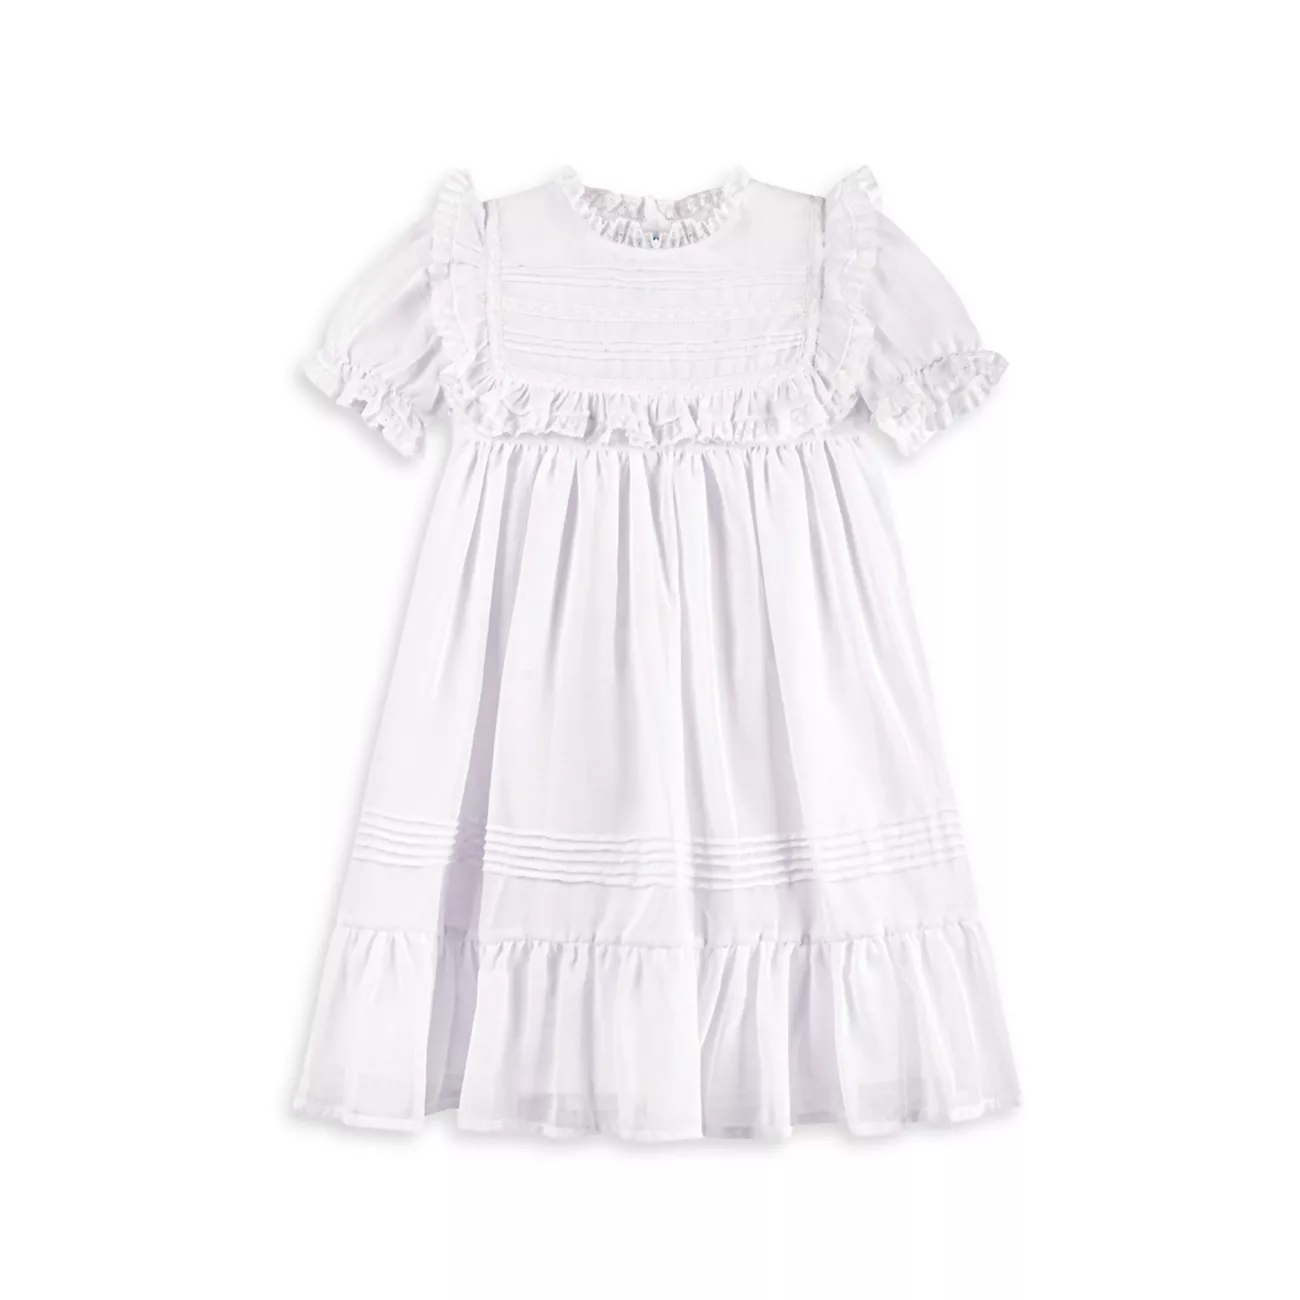 Для маленьких девочек, для маленьких девочек и для маленьких девочек; Вуаль для девочек и amp; Кружевное платье чайной длины Feltman Brothers